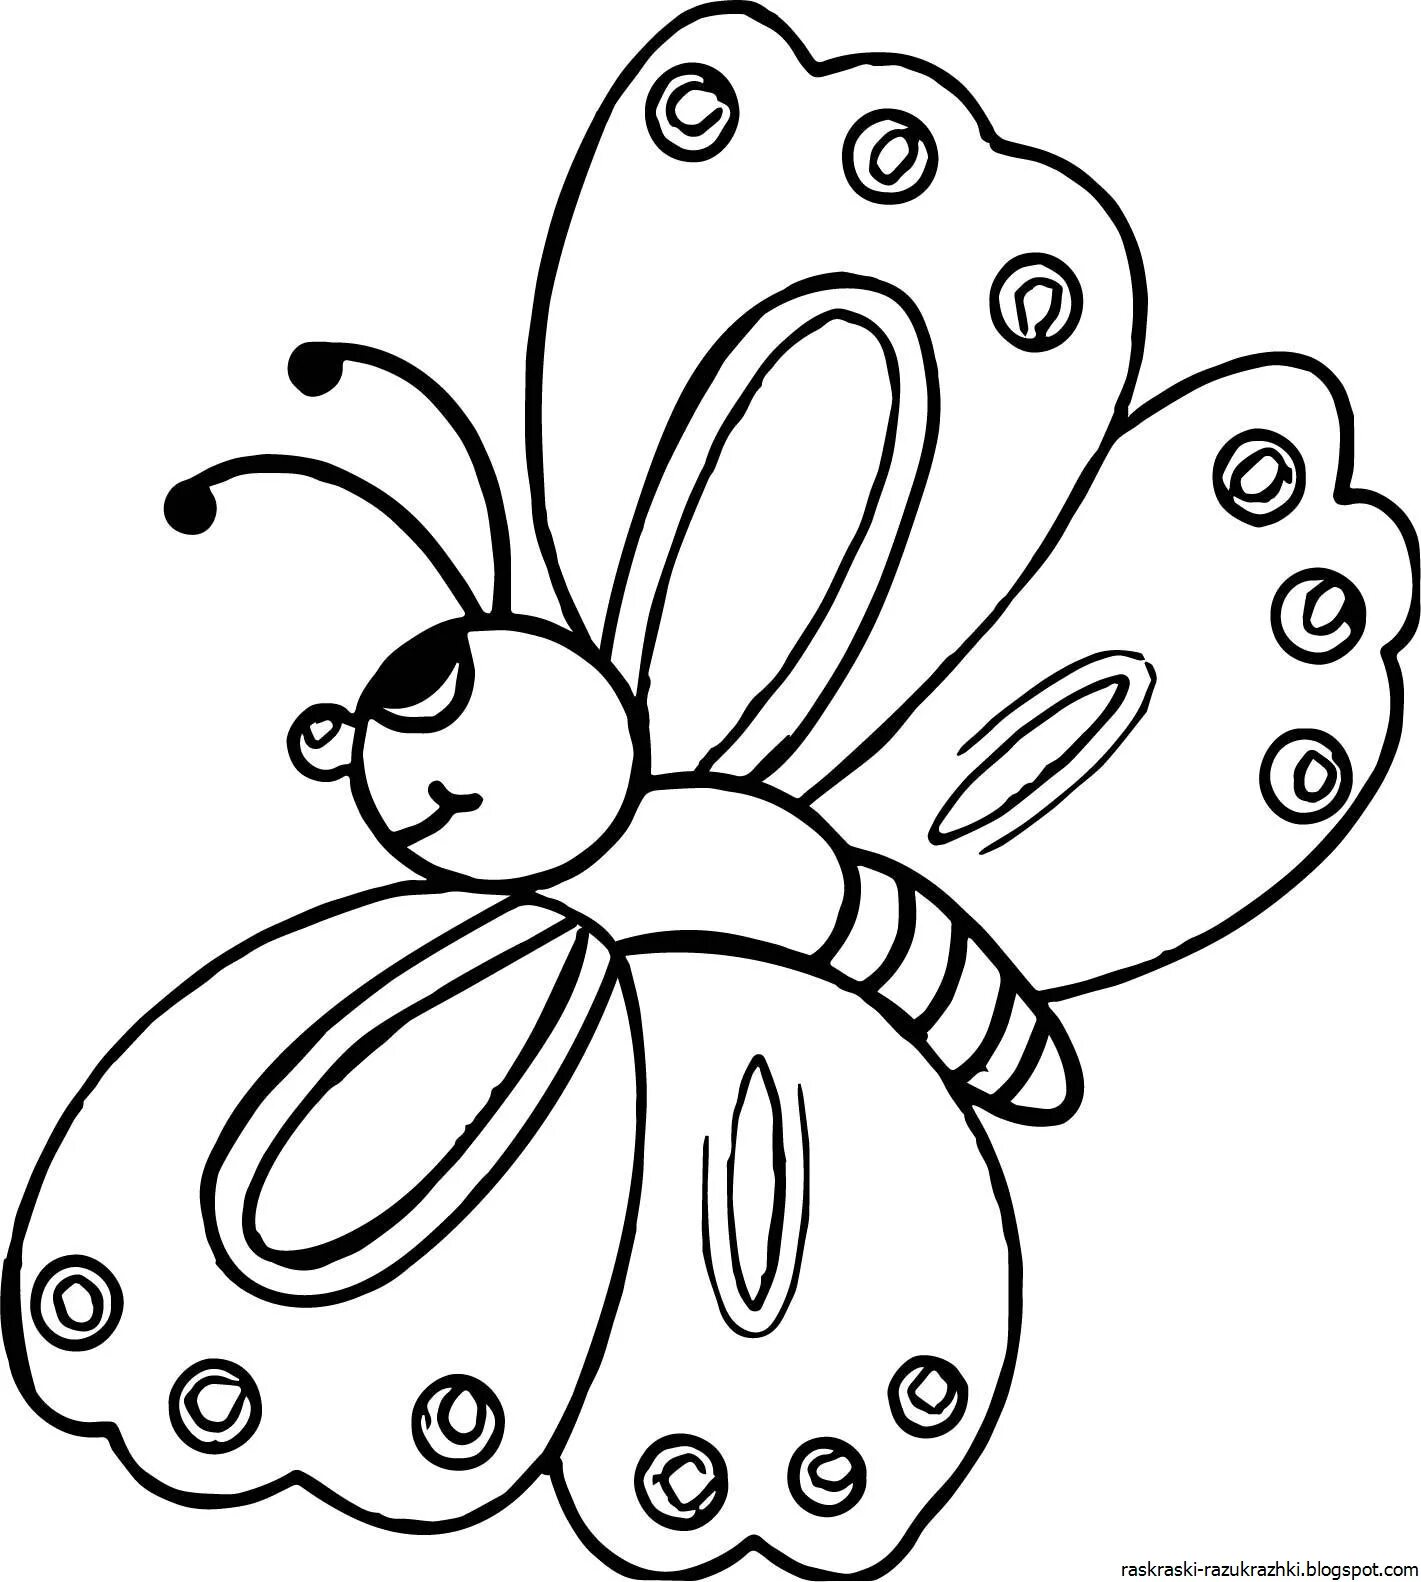 Раскраски насекомые для детей 5 6. Бабочка раскраска для детей. Бабочка раскраска для малышей. Раскраска для детей 3 лет насекомые. Детские раскраски бабочки.